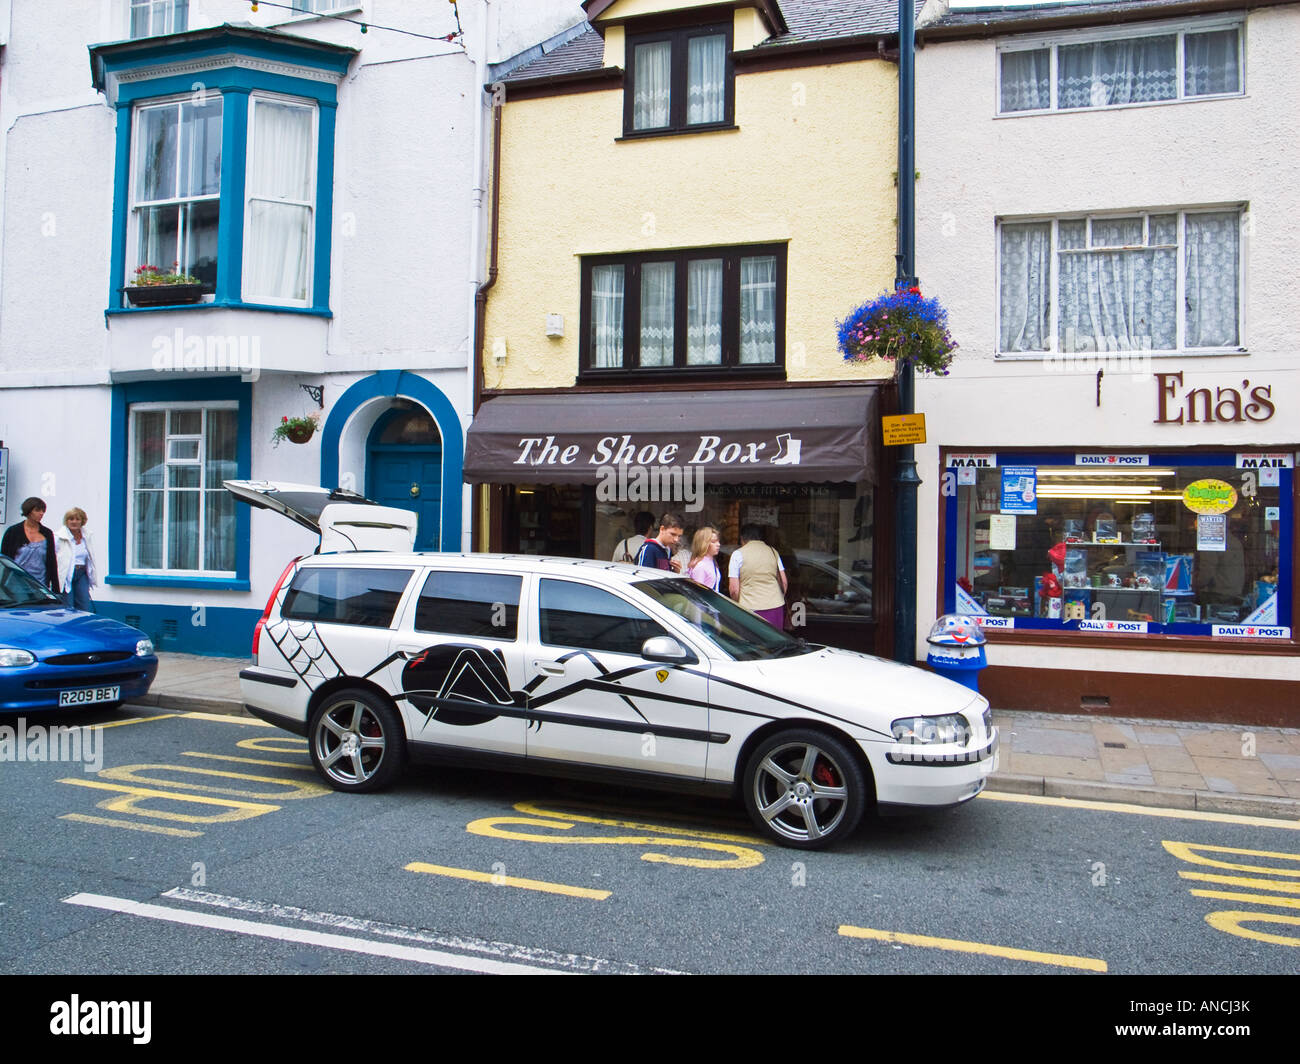 White Estate Volvo voiture garée dans la rue principale au nord du Pays de Galles Royaume-uni Beaumaris Anglesey du roulement de l'araignée noire inhabituelle et motif web Banque D'Images